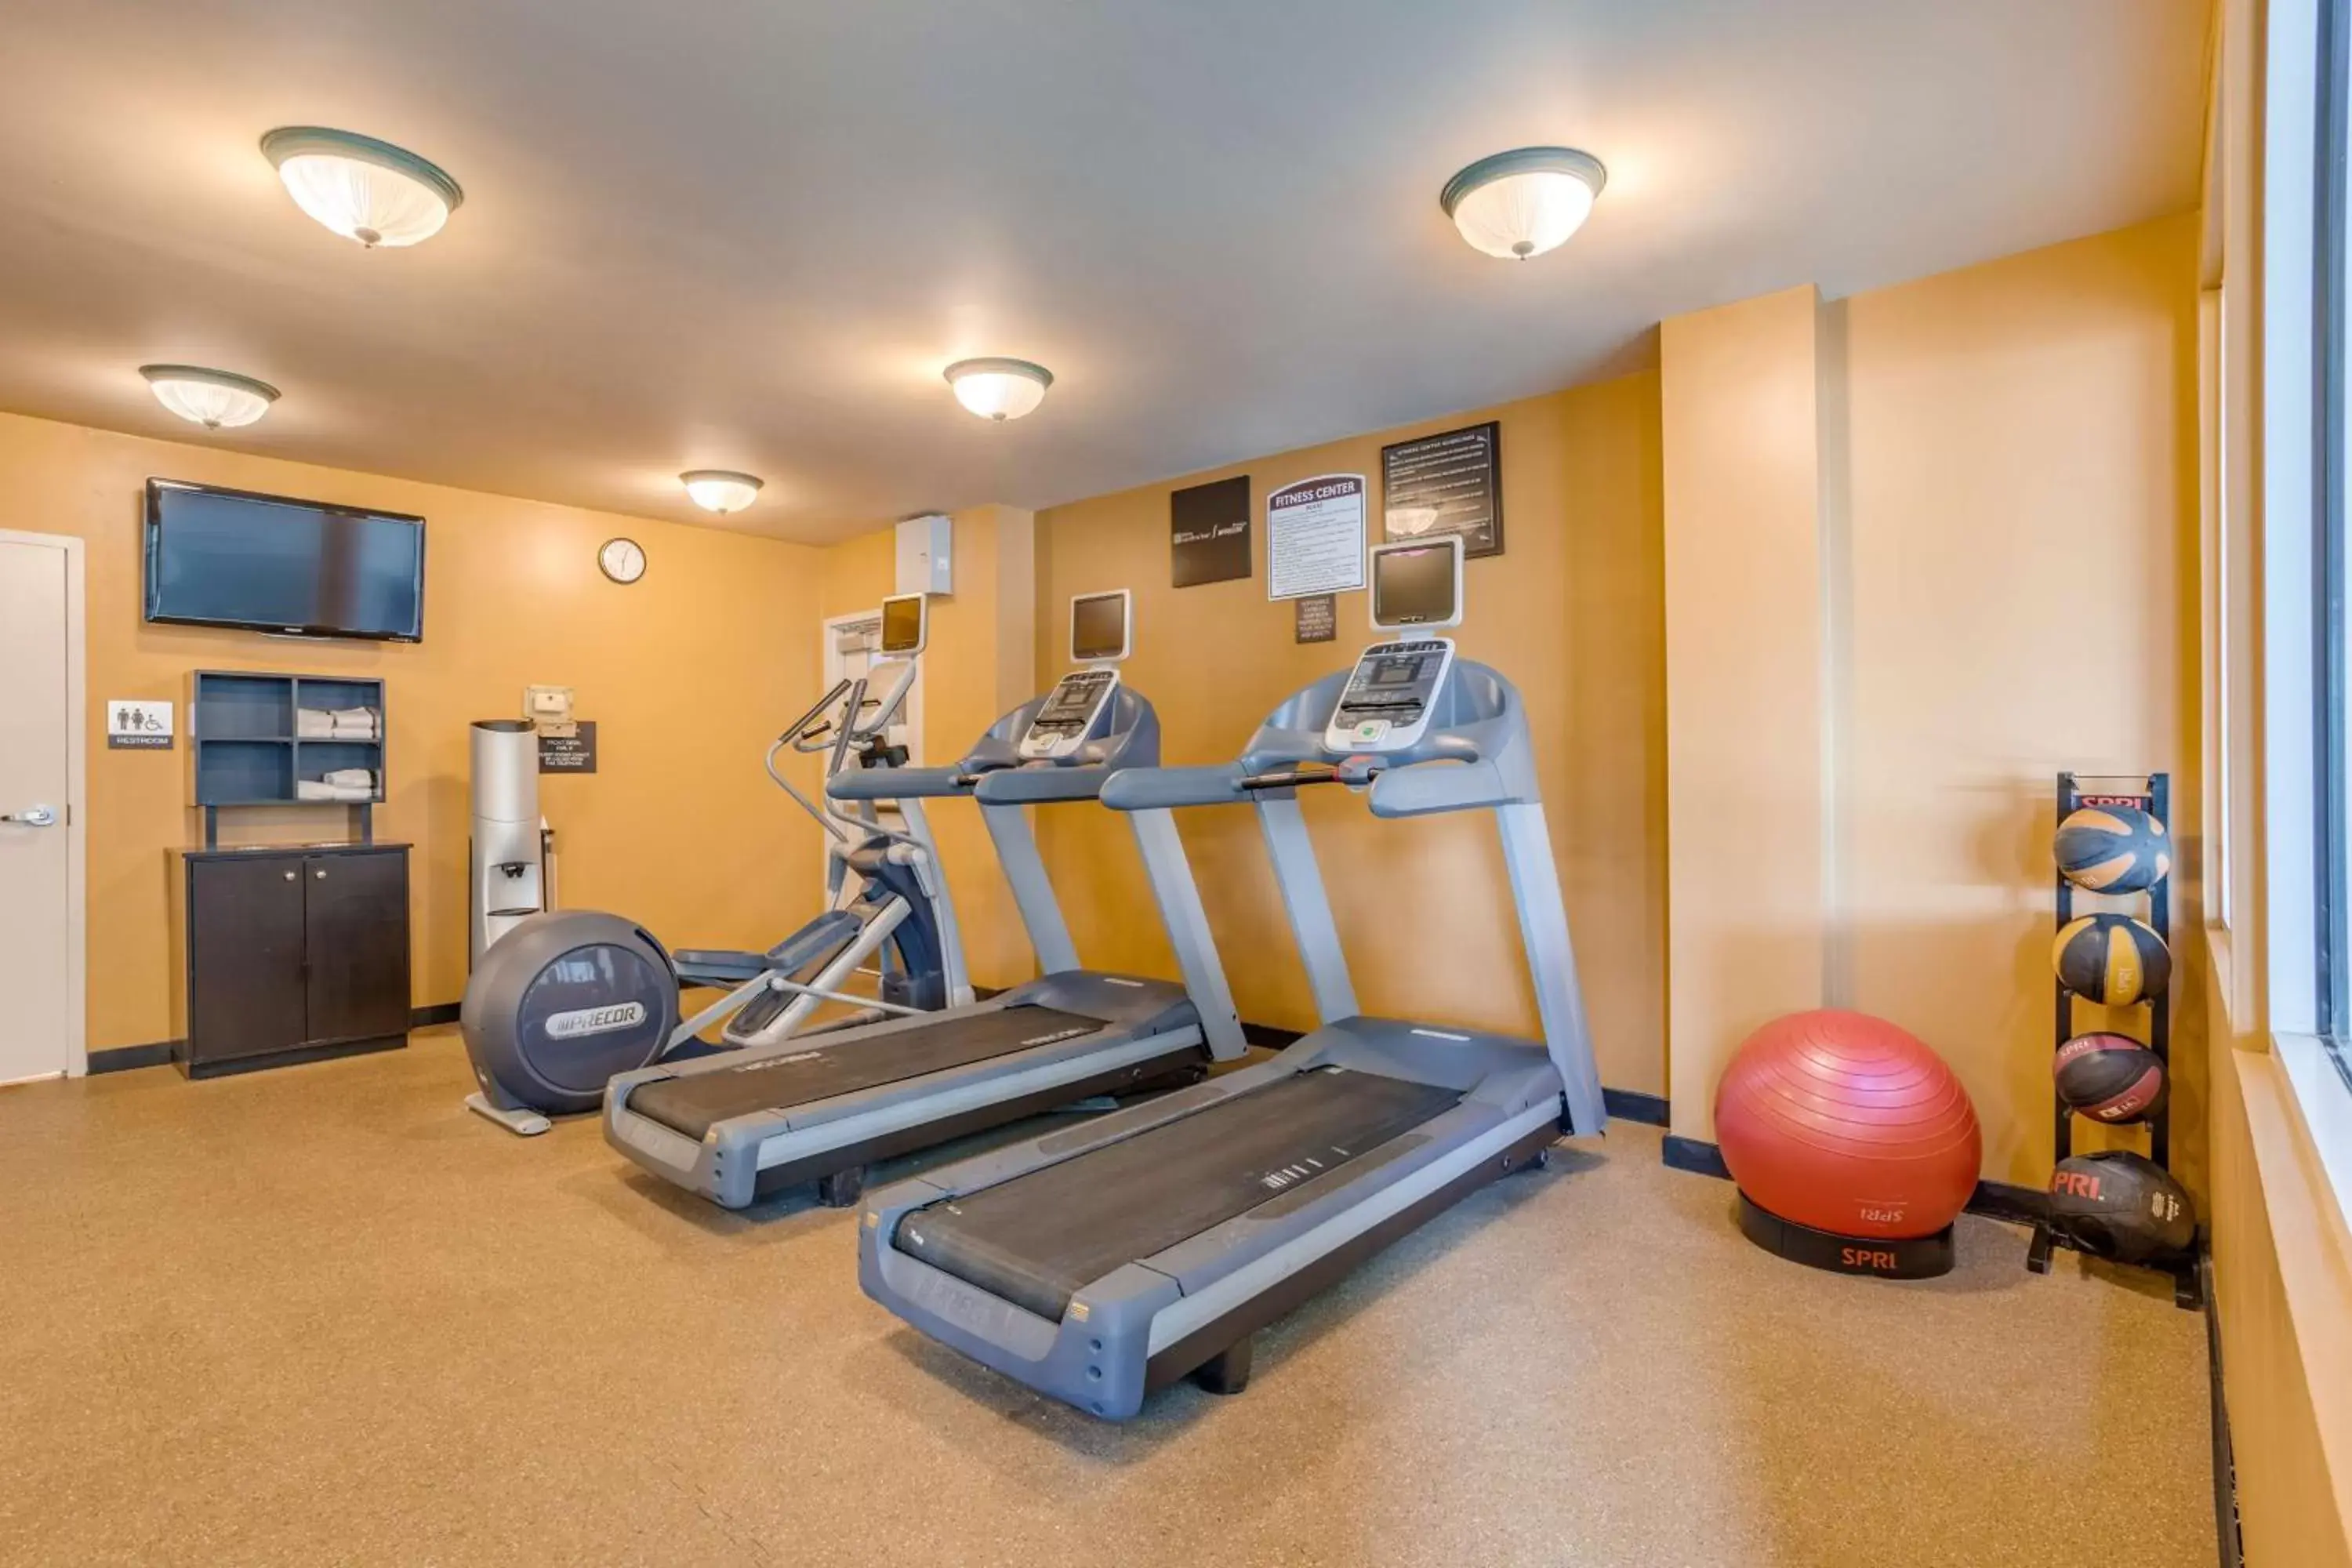 Fitness centre/facilities, Fitness Center/Facilities in Hilton Garden Inn Cincinnati/Sharonville